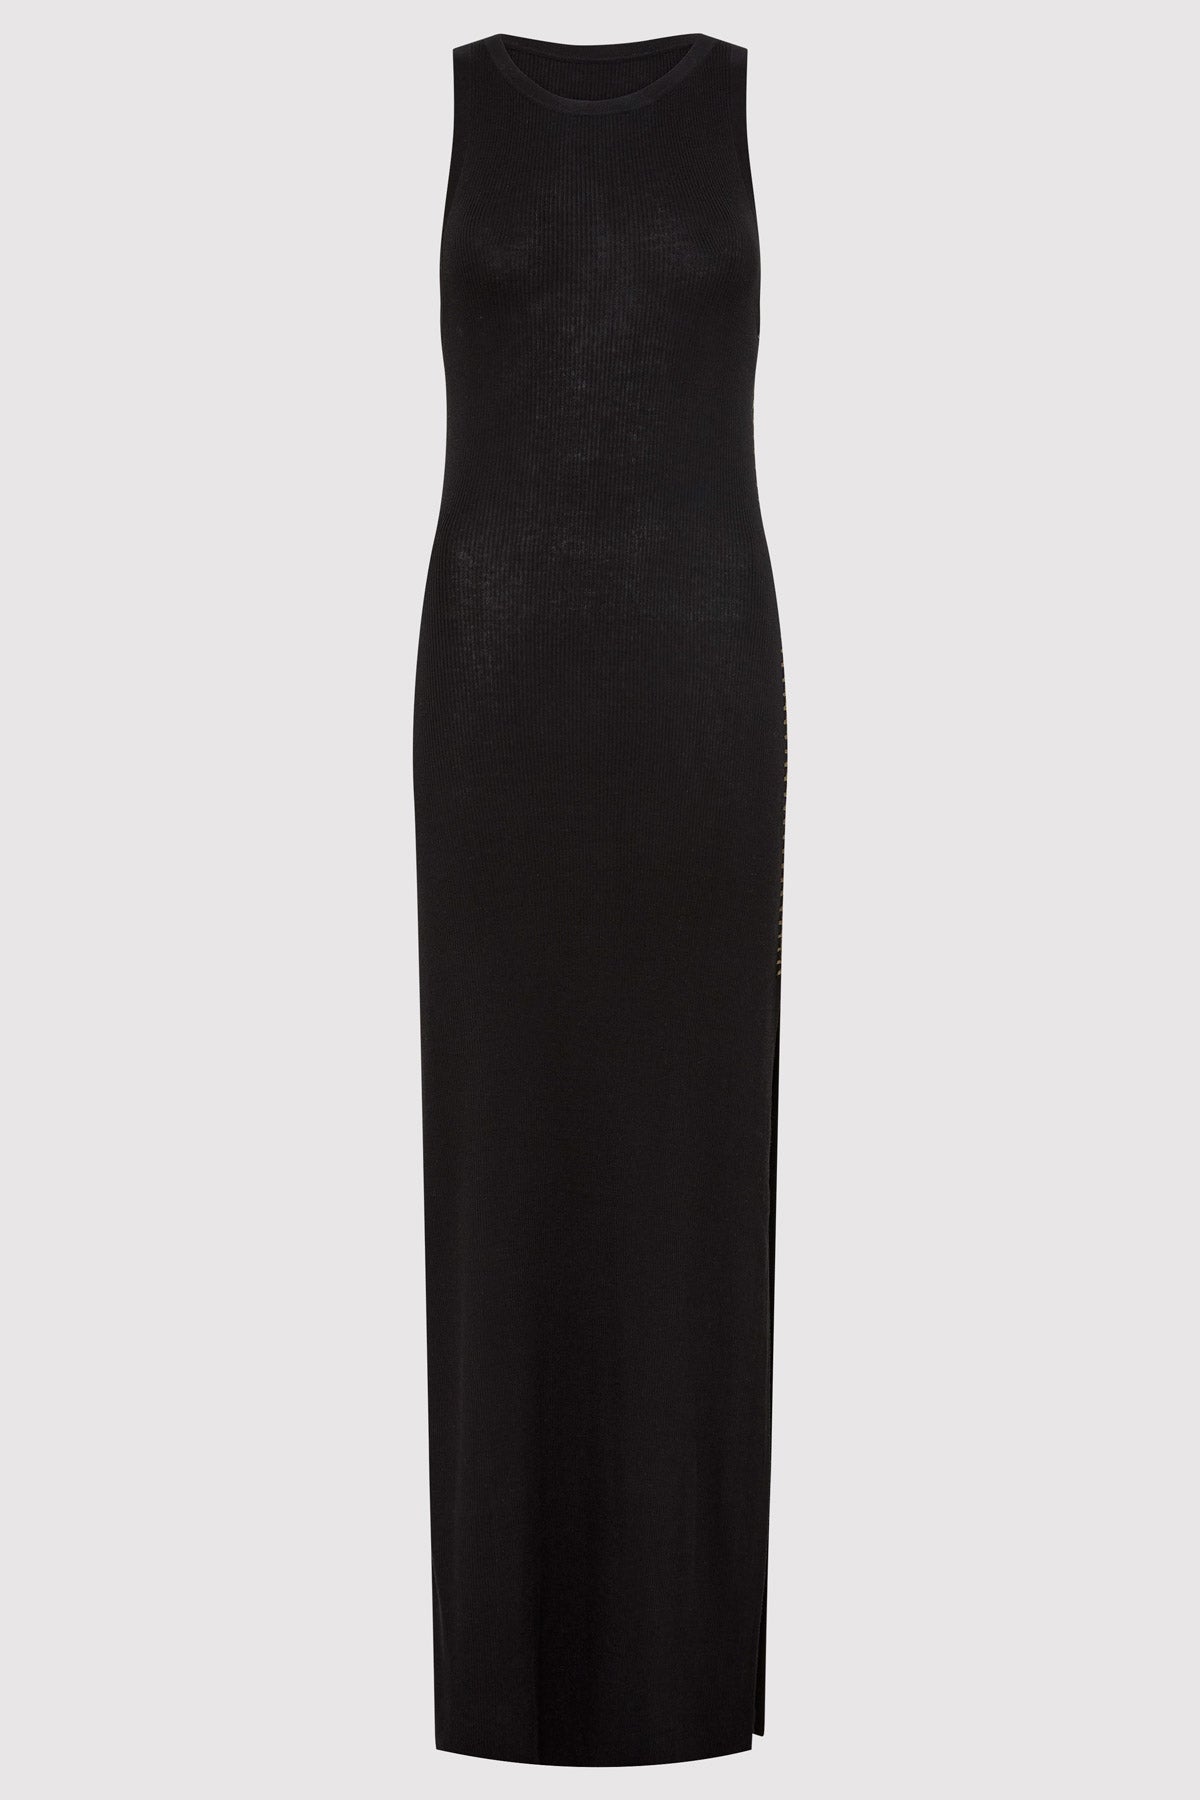 Stitch Detail Dress - Black